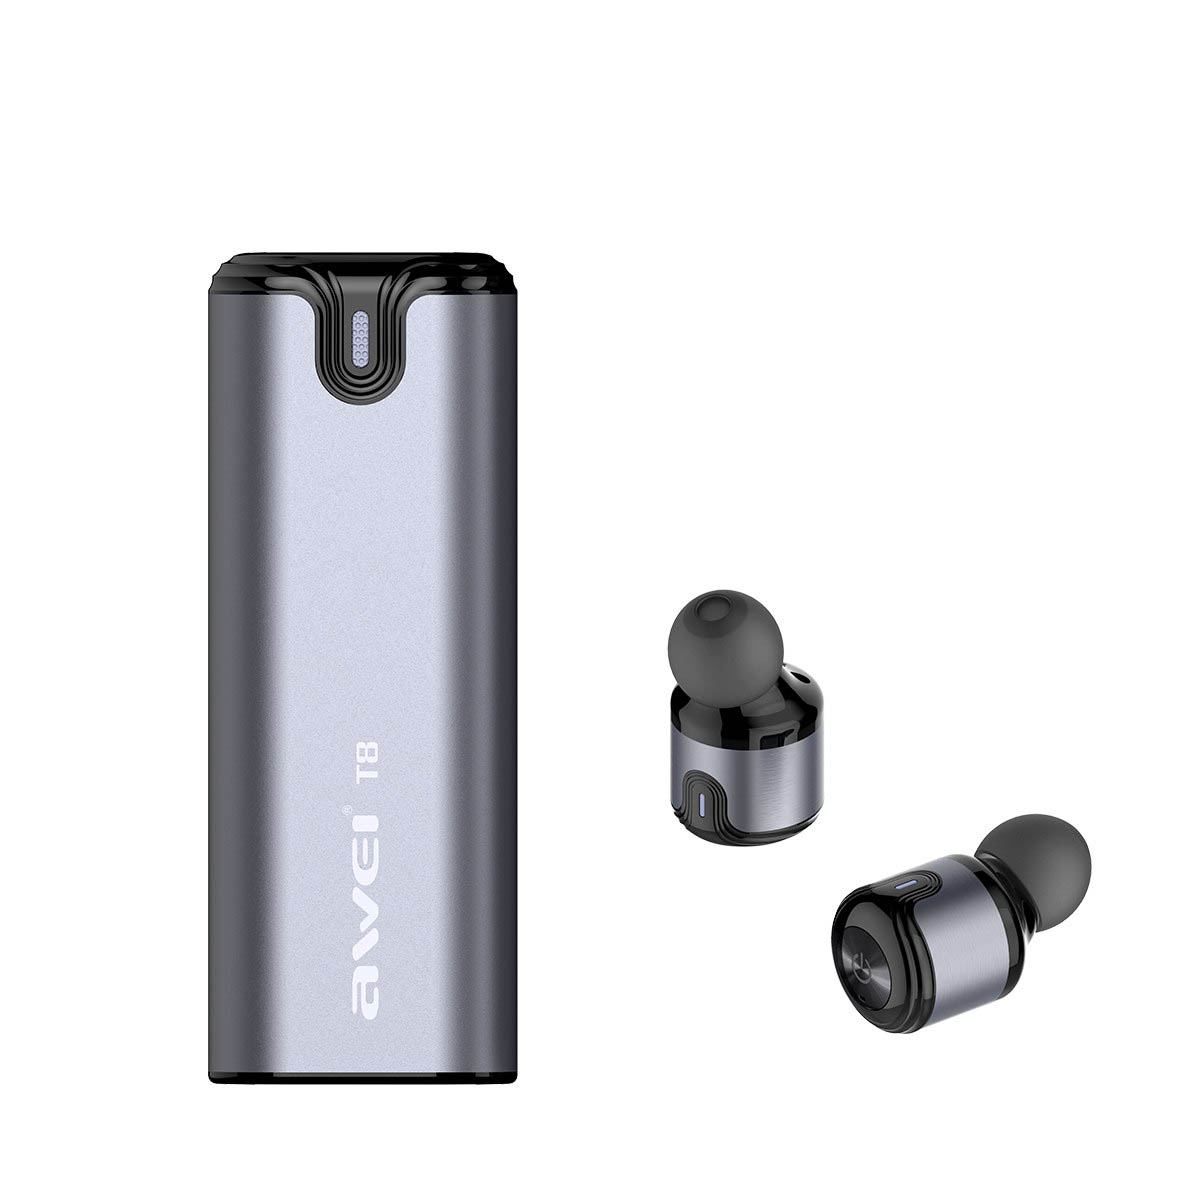 Гарнитура (наушники с микрофоном) беспроводная, AWEI T8 TWS Bluetooth Earphone цвет серый.